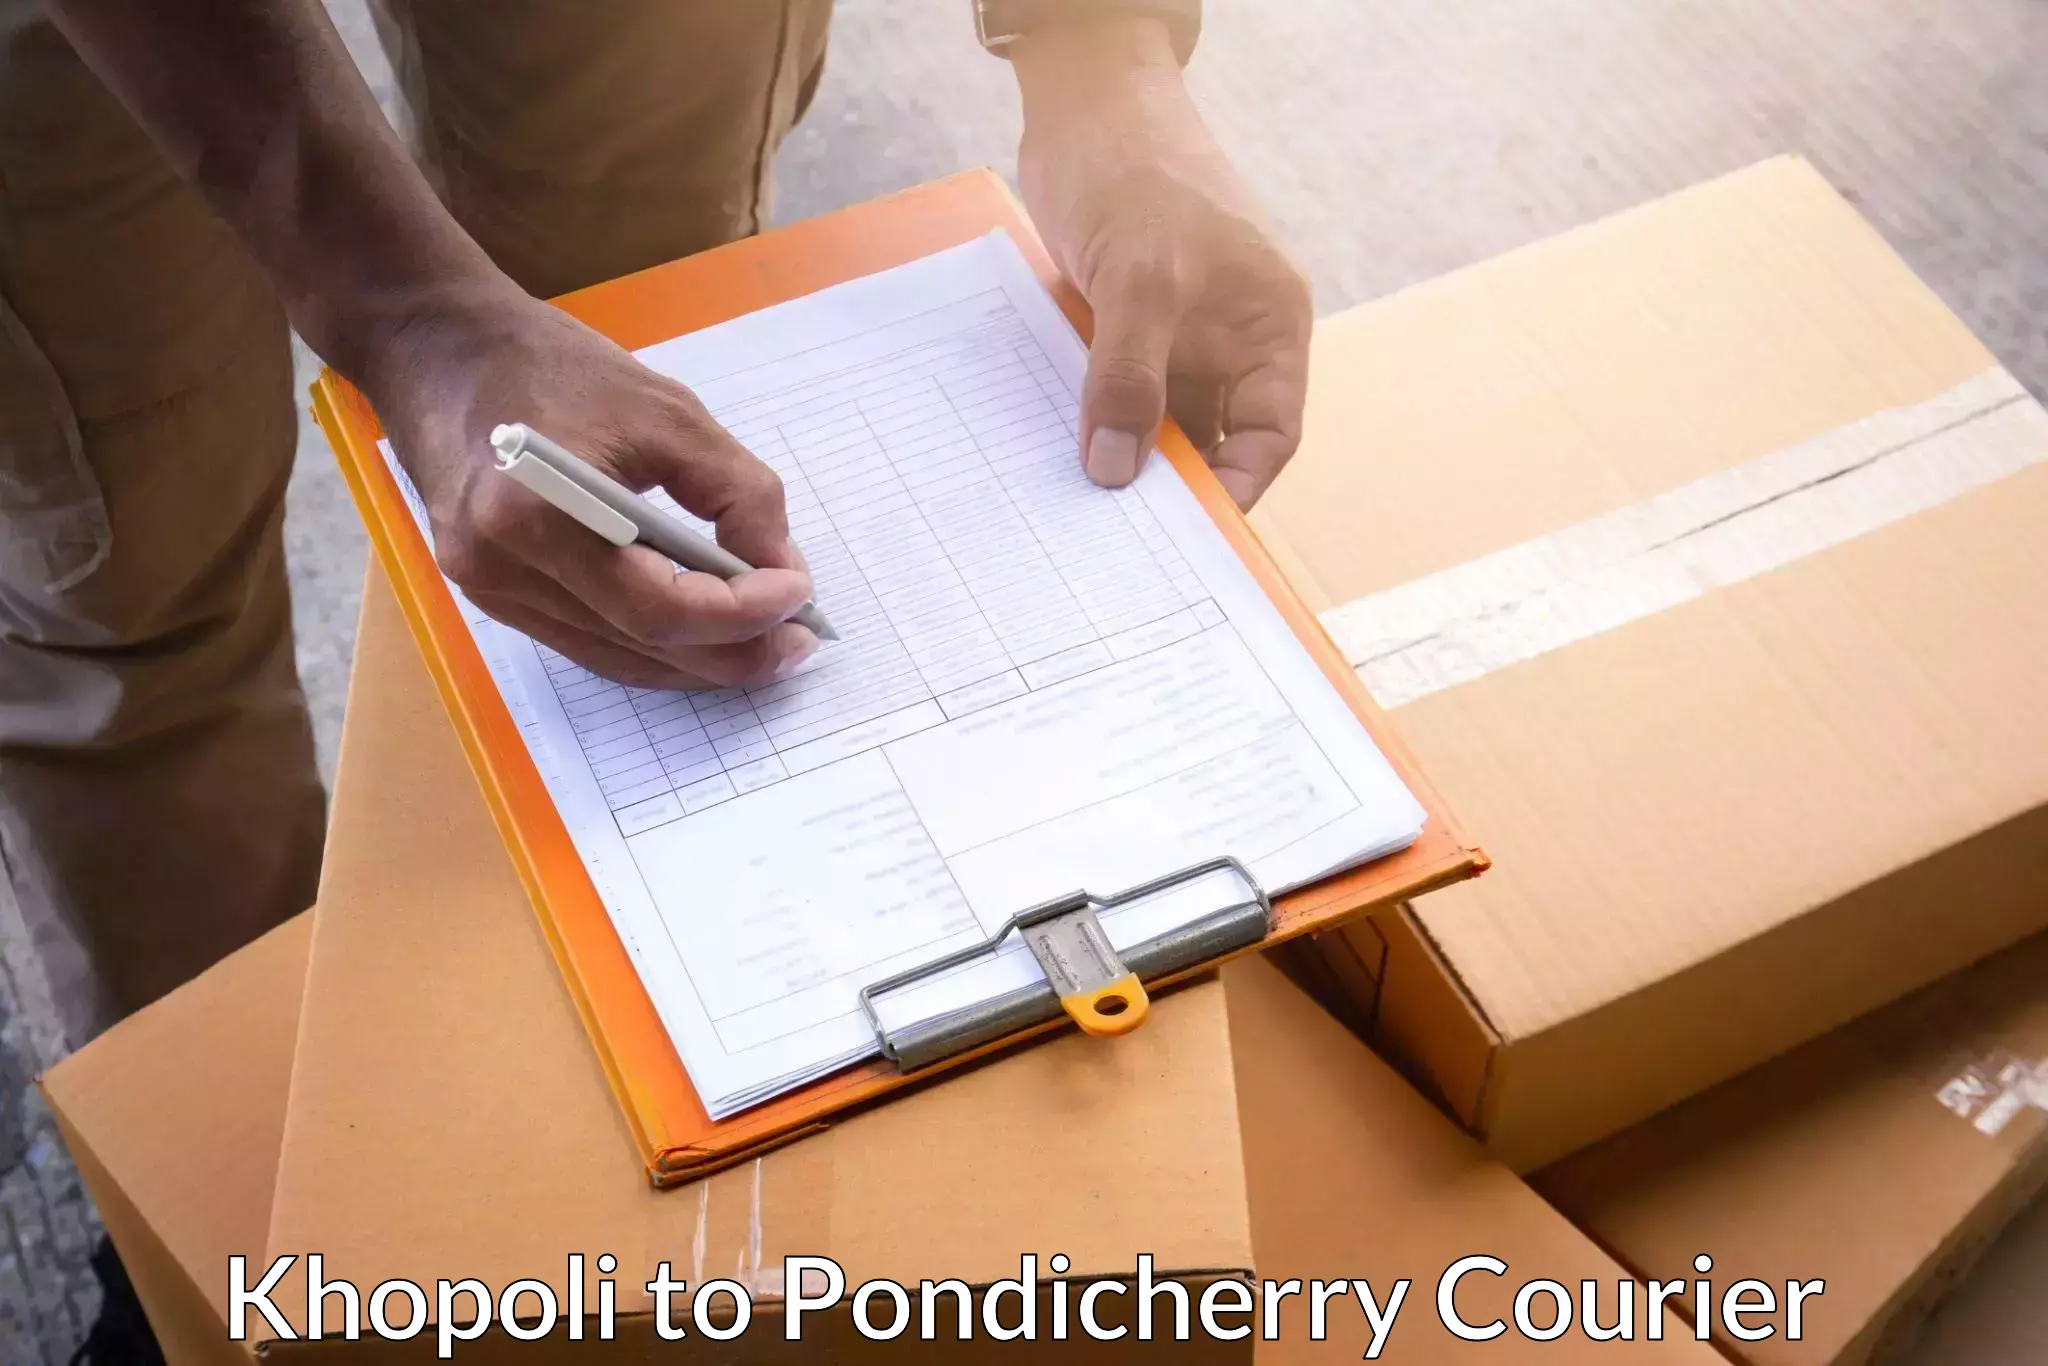 Efficient parcel service Khopoli to Pondicherry